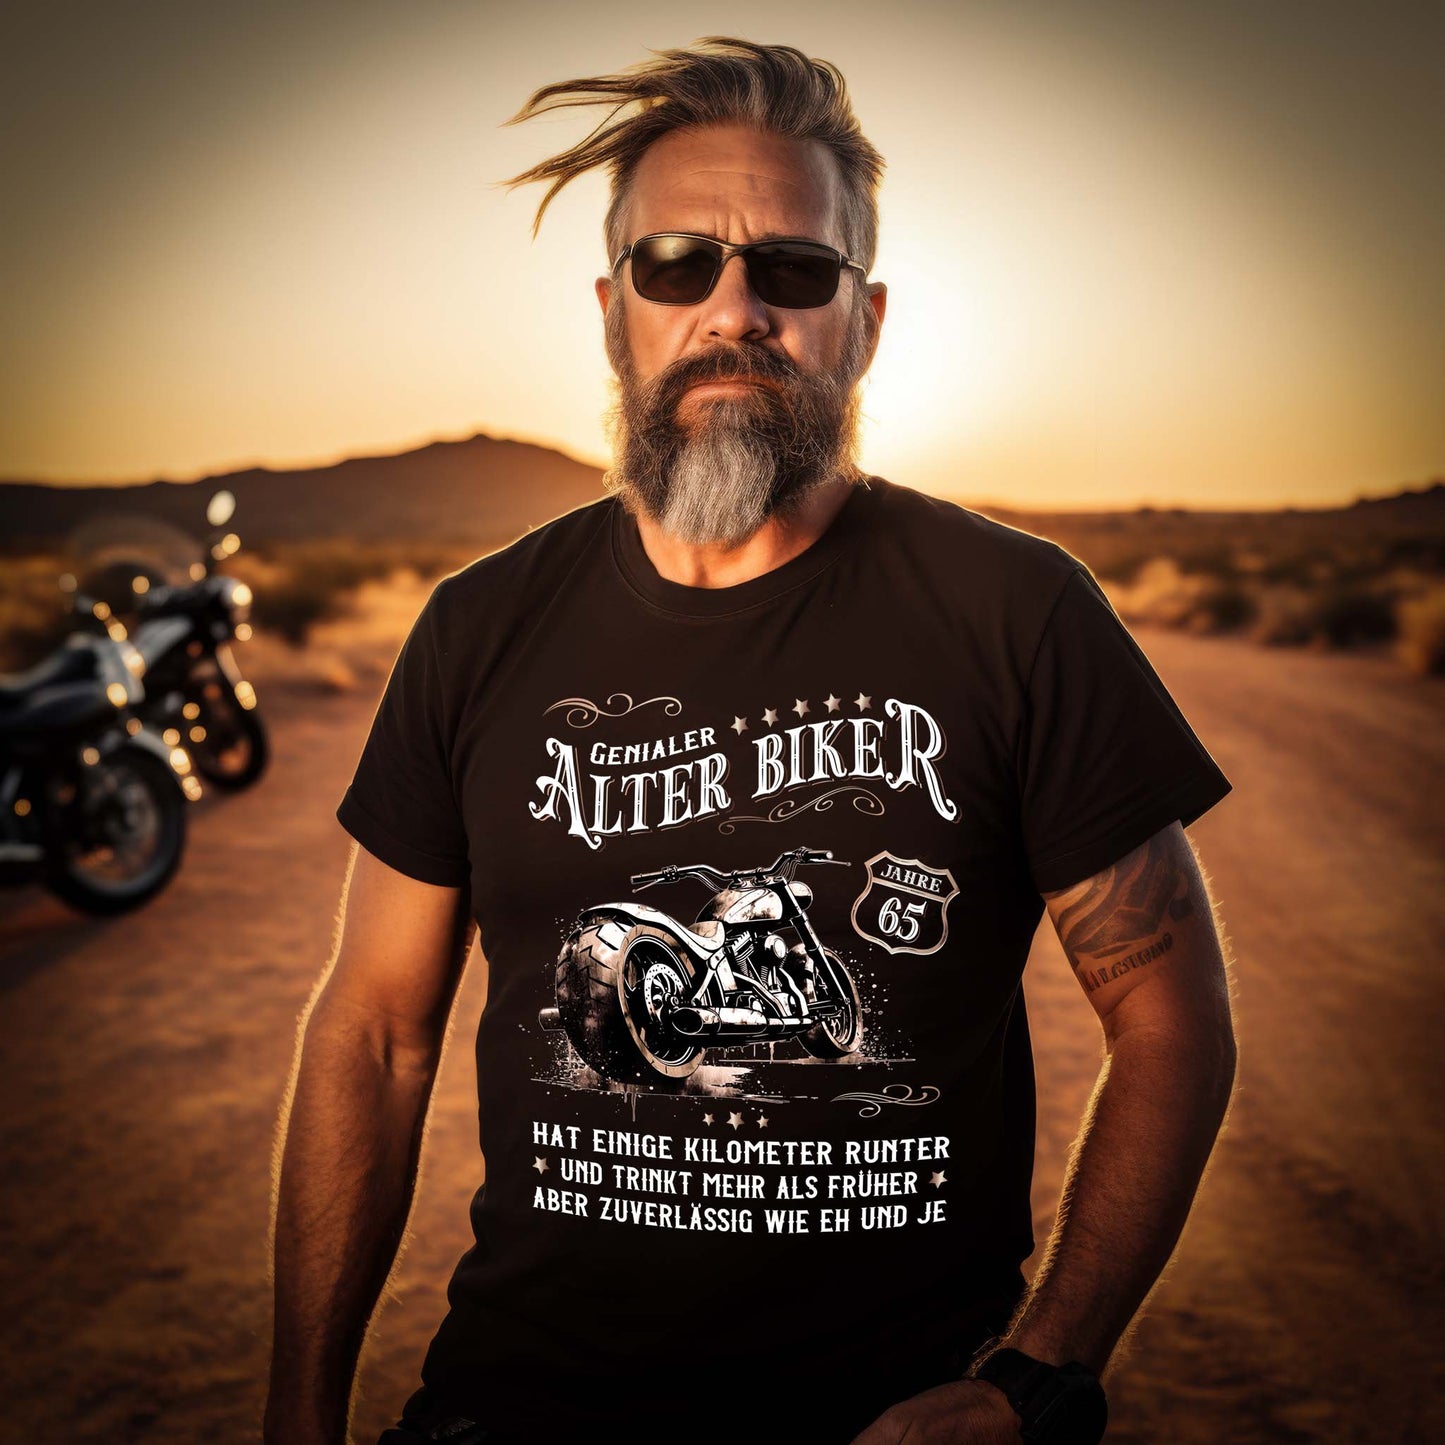 Ein Biker Geburtstags- T-Shirt für Motorradfahrer von Wingbikers mit dem Aufdruck, Alter Biker - 65 Jahre - Einige Kilometer runter, trinkt mehr - aber zuverlässig wie eh und je - in schwarz.